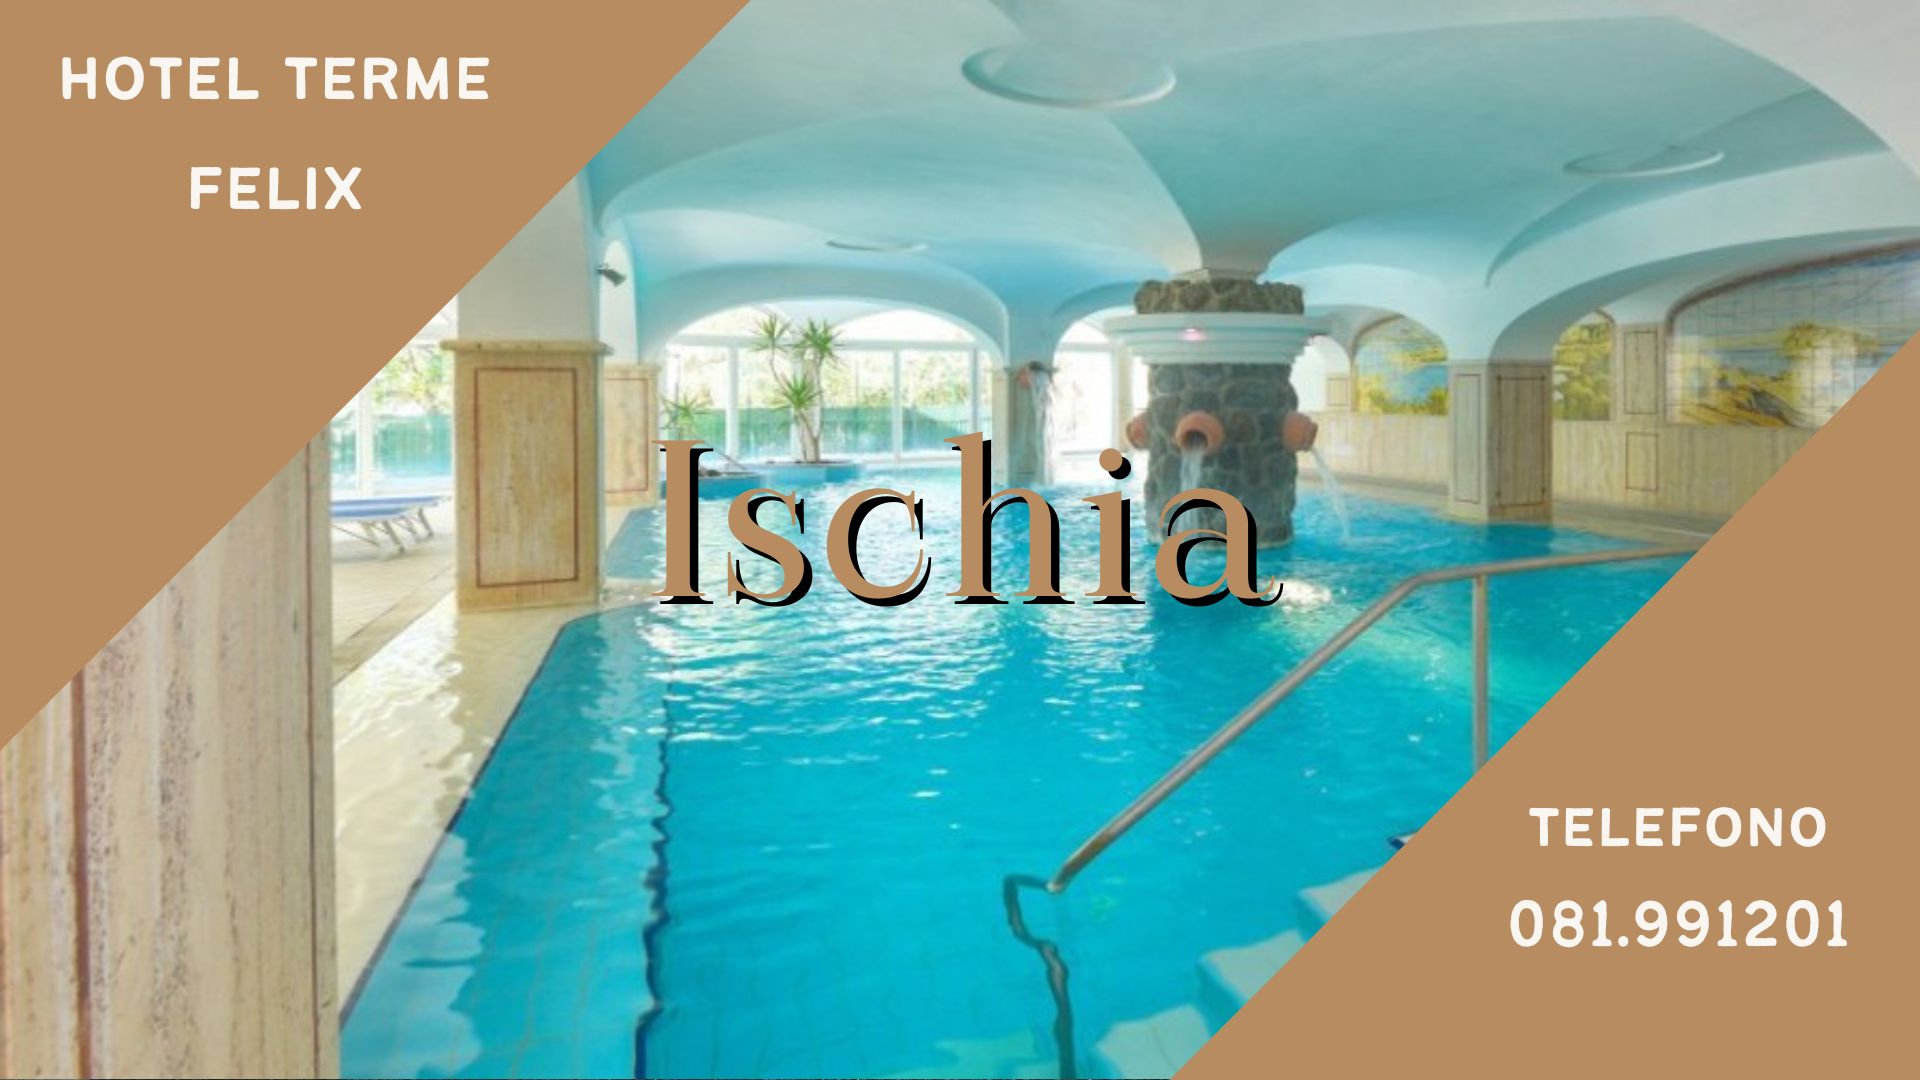 Hotel Felix Ischia - Offerta